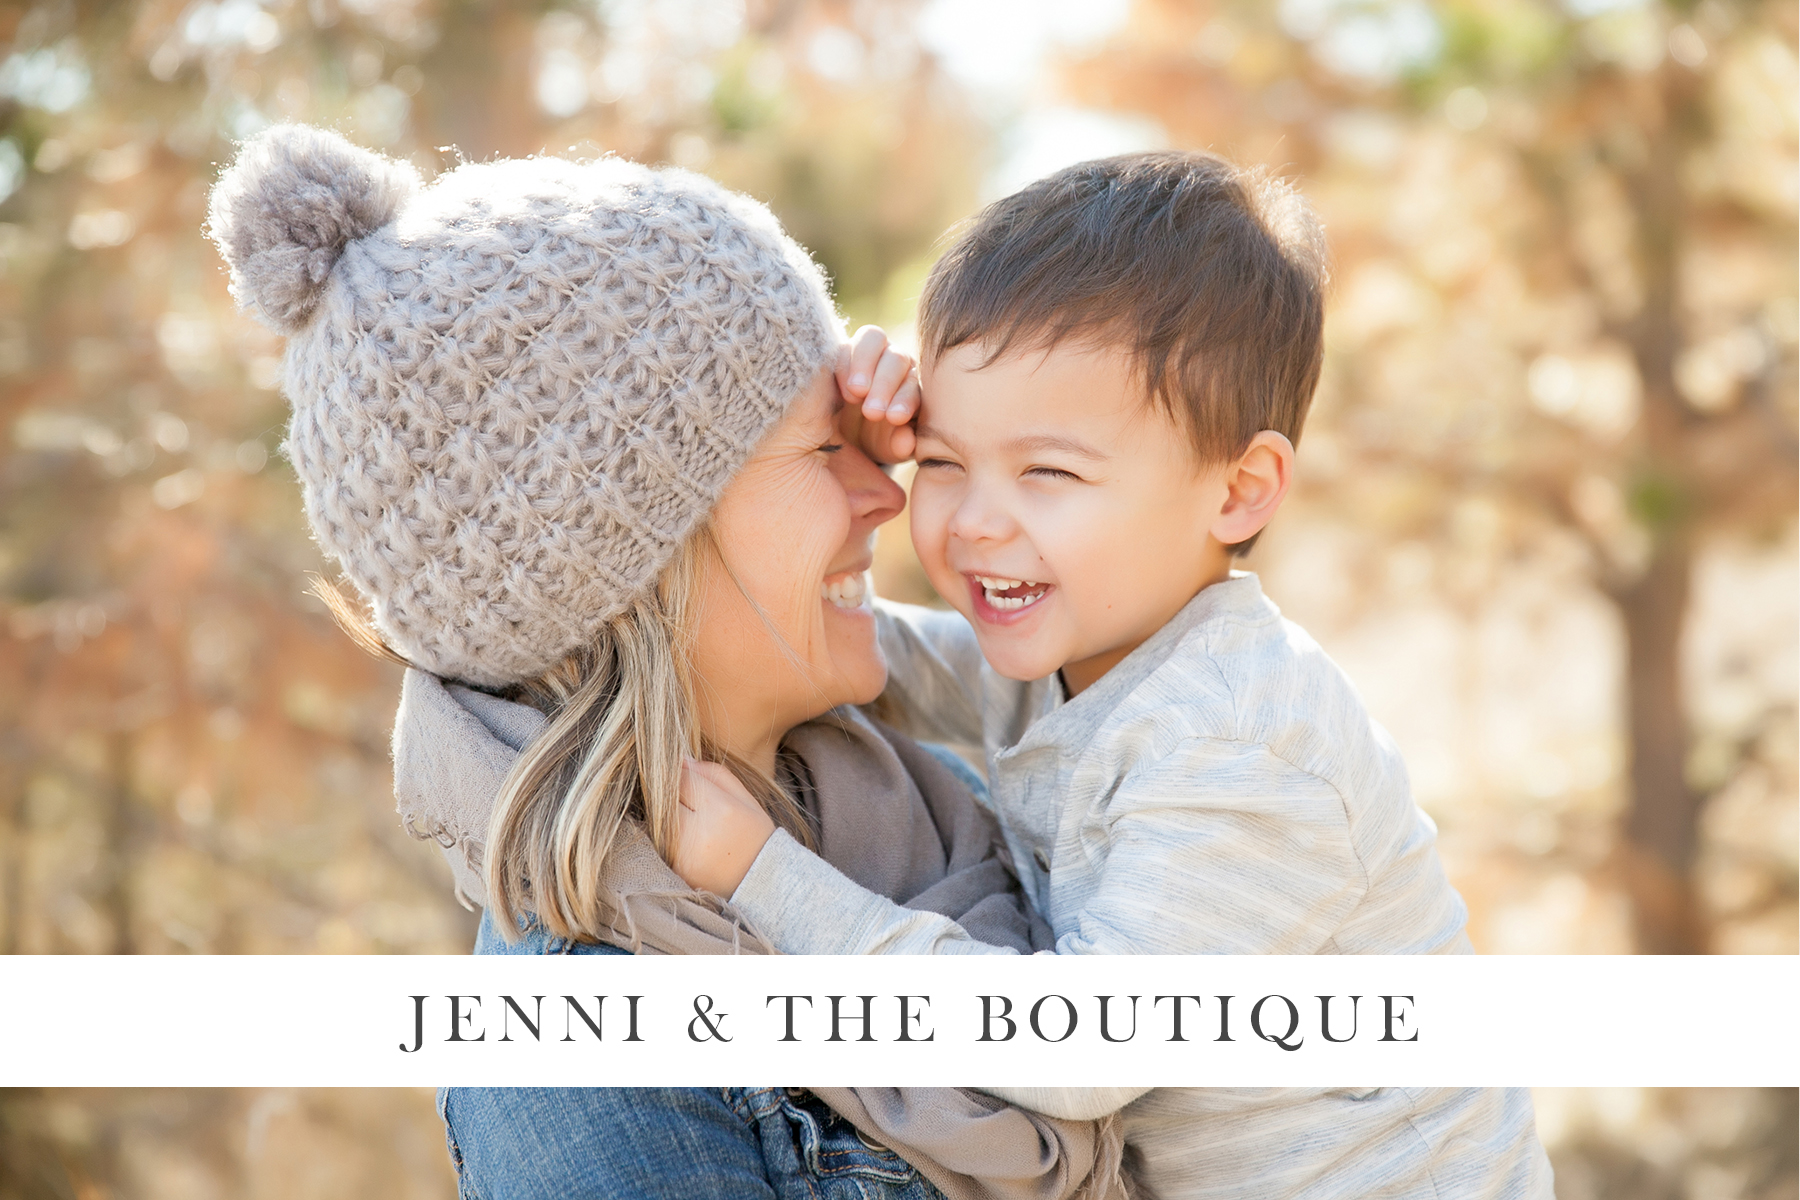 Jenni Maroney Portrait Boutique, Denver newborn photographer, Boulder baby photographer, Boulder family photographer.